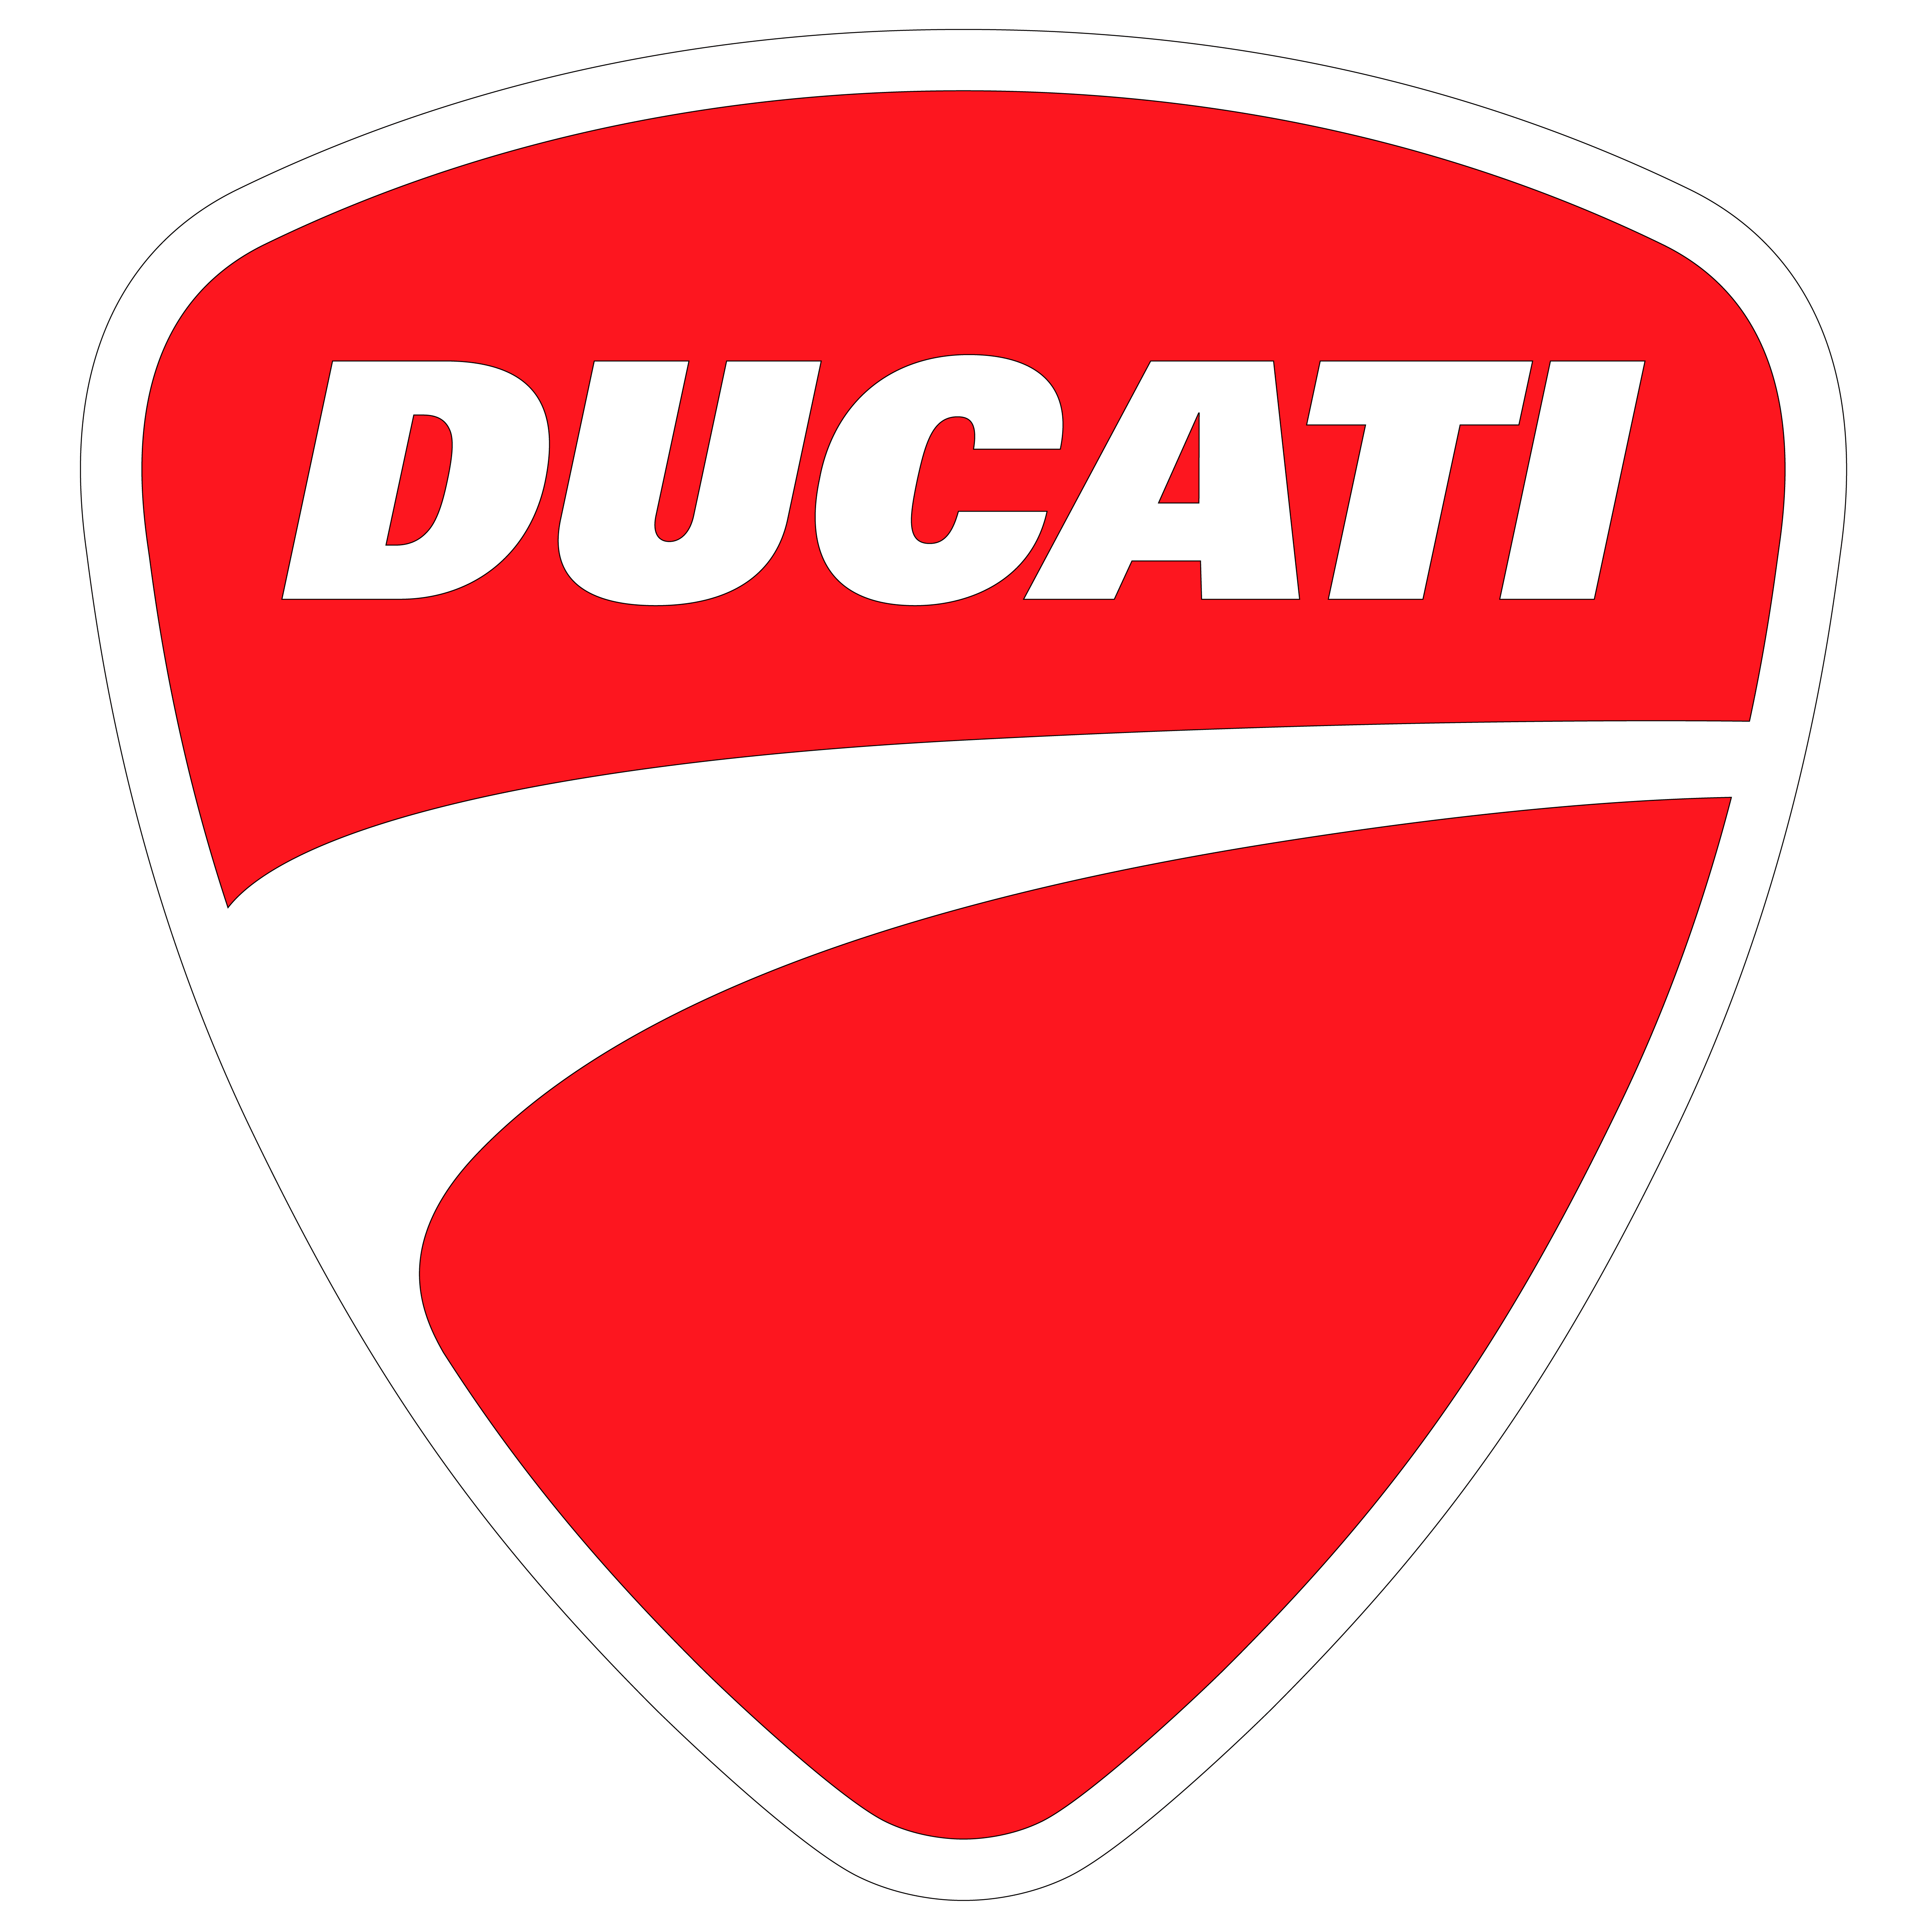 DUCATI CORSE logo rebuild by 